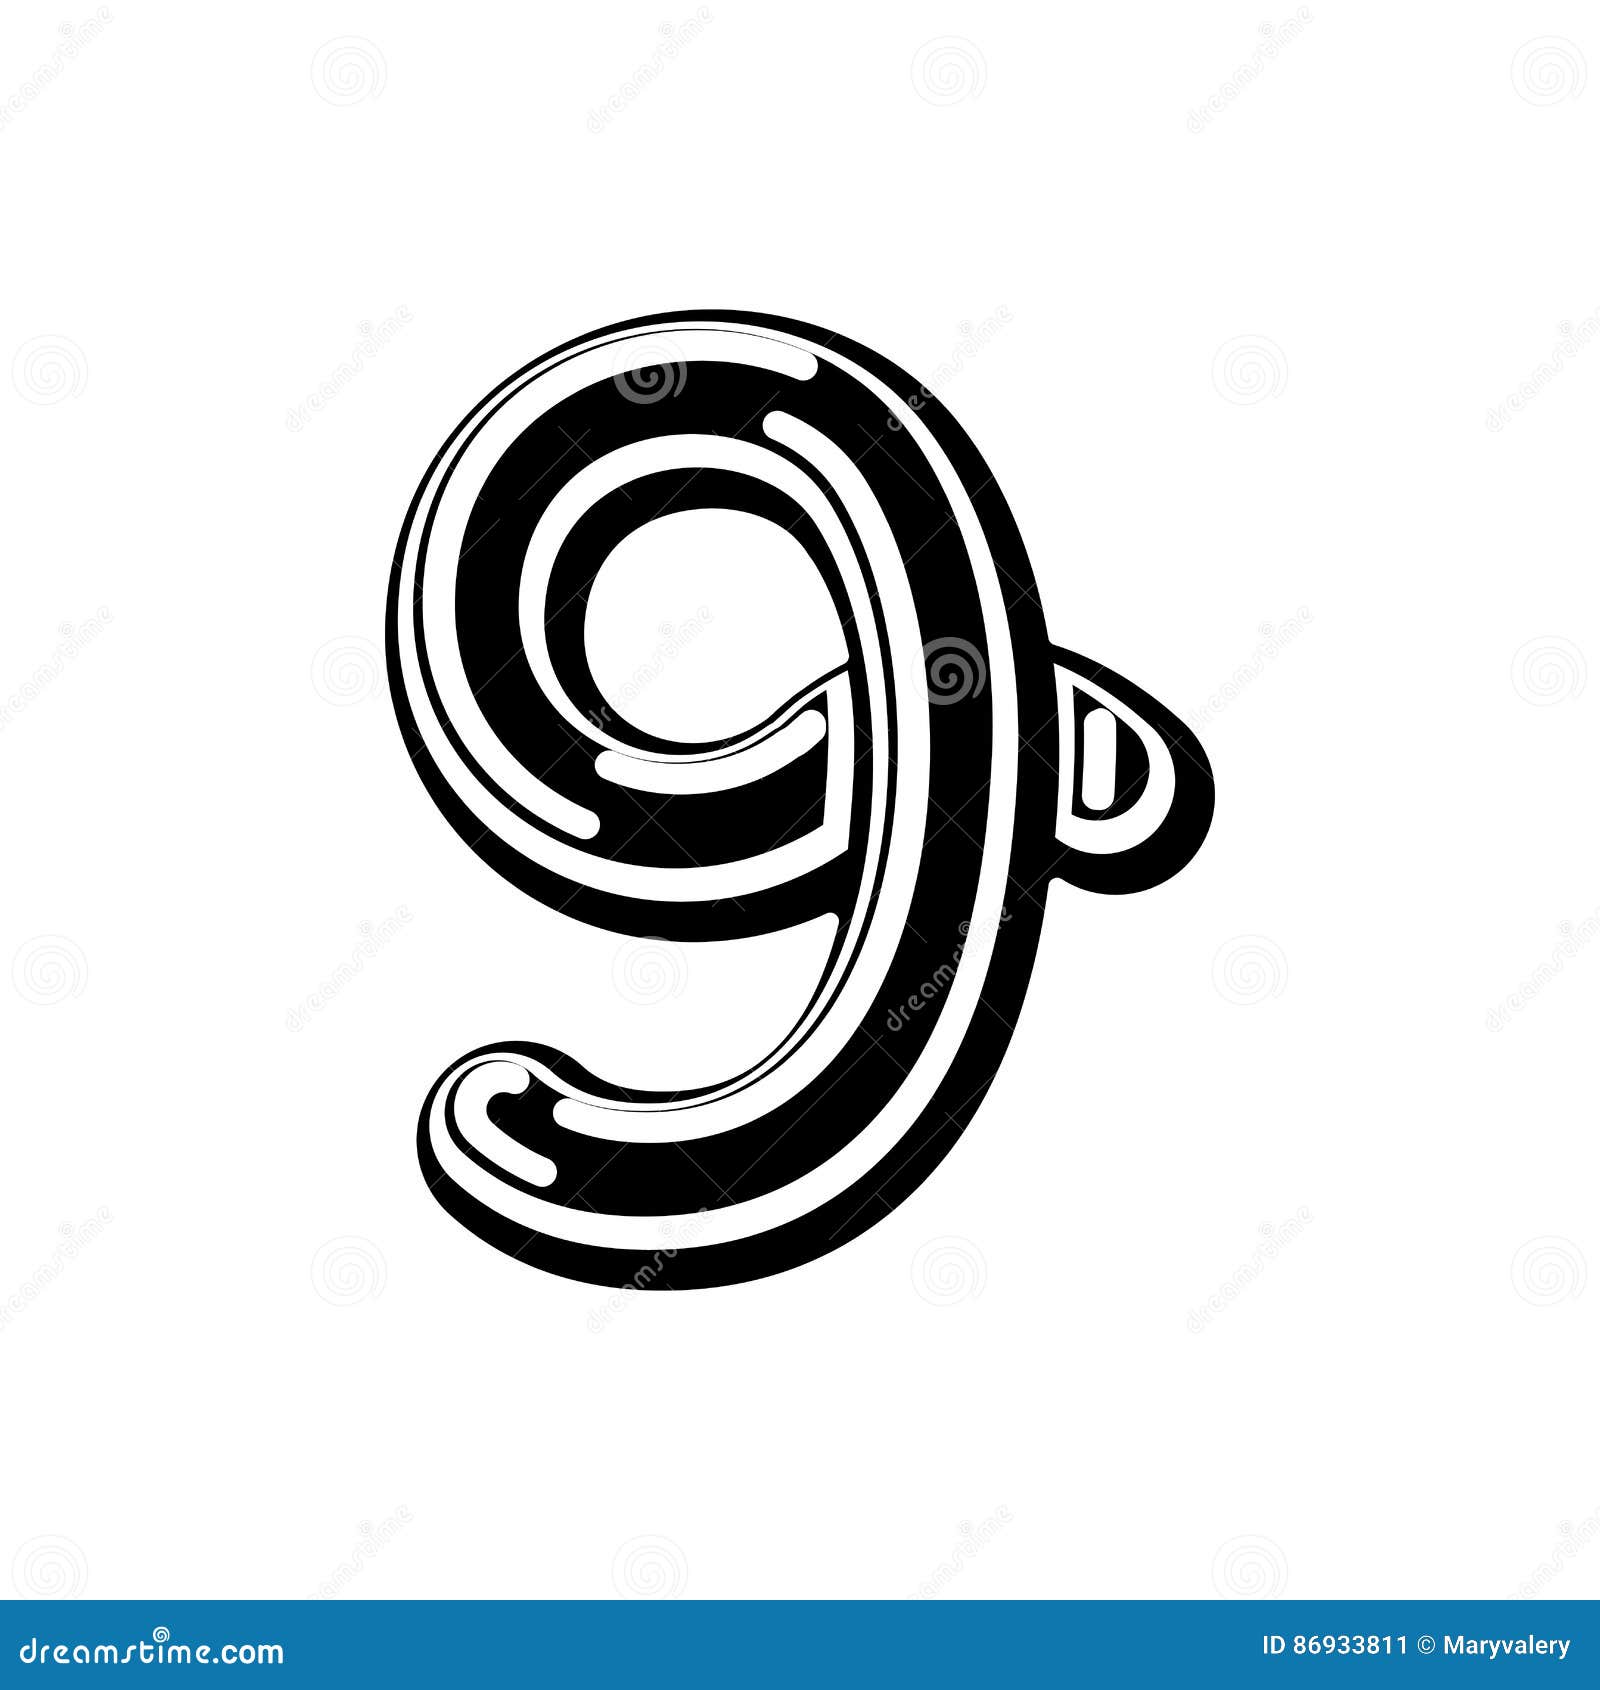 3700 Celtic Font Illustrations RoyaltyFree Vector Graphics  Clip Art   iStock  Alphabet